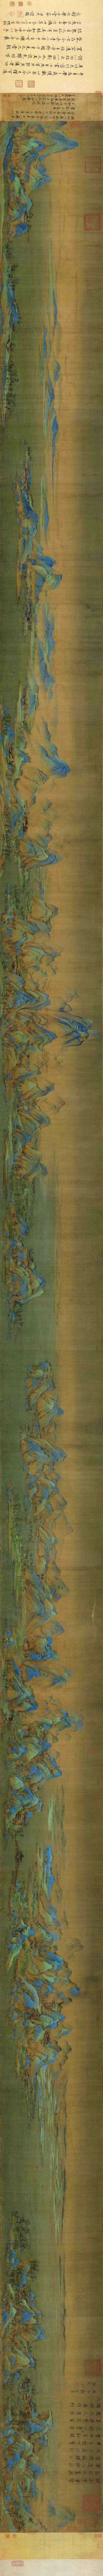 《千里江山图》该画出自北宋期间，年仅18岁的王希孟之手。